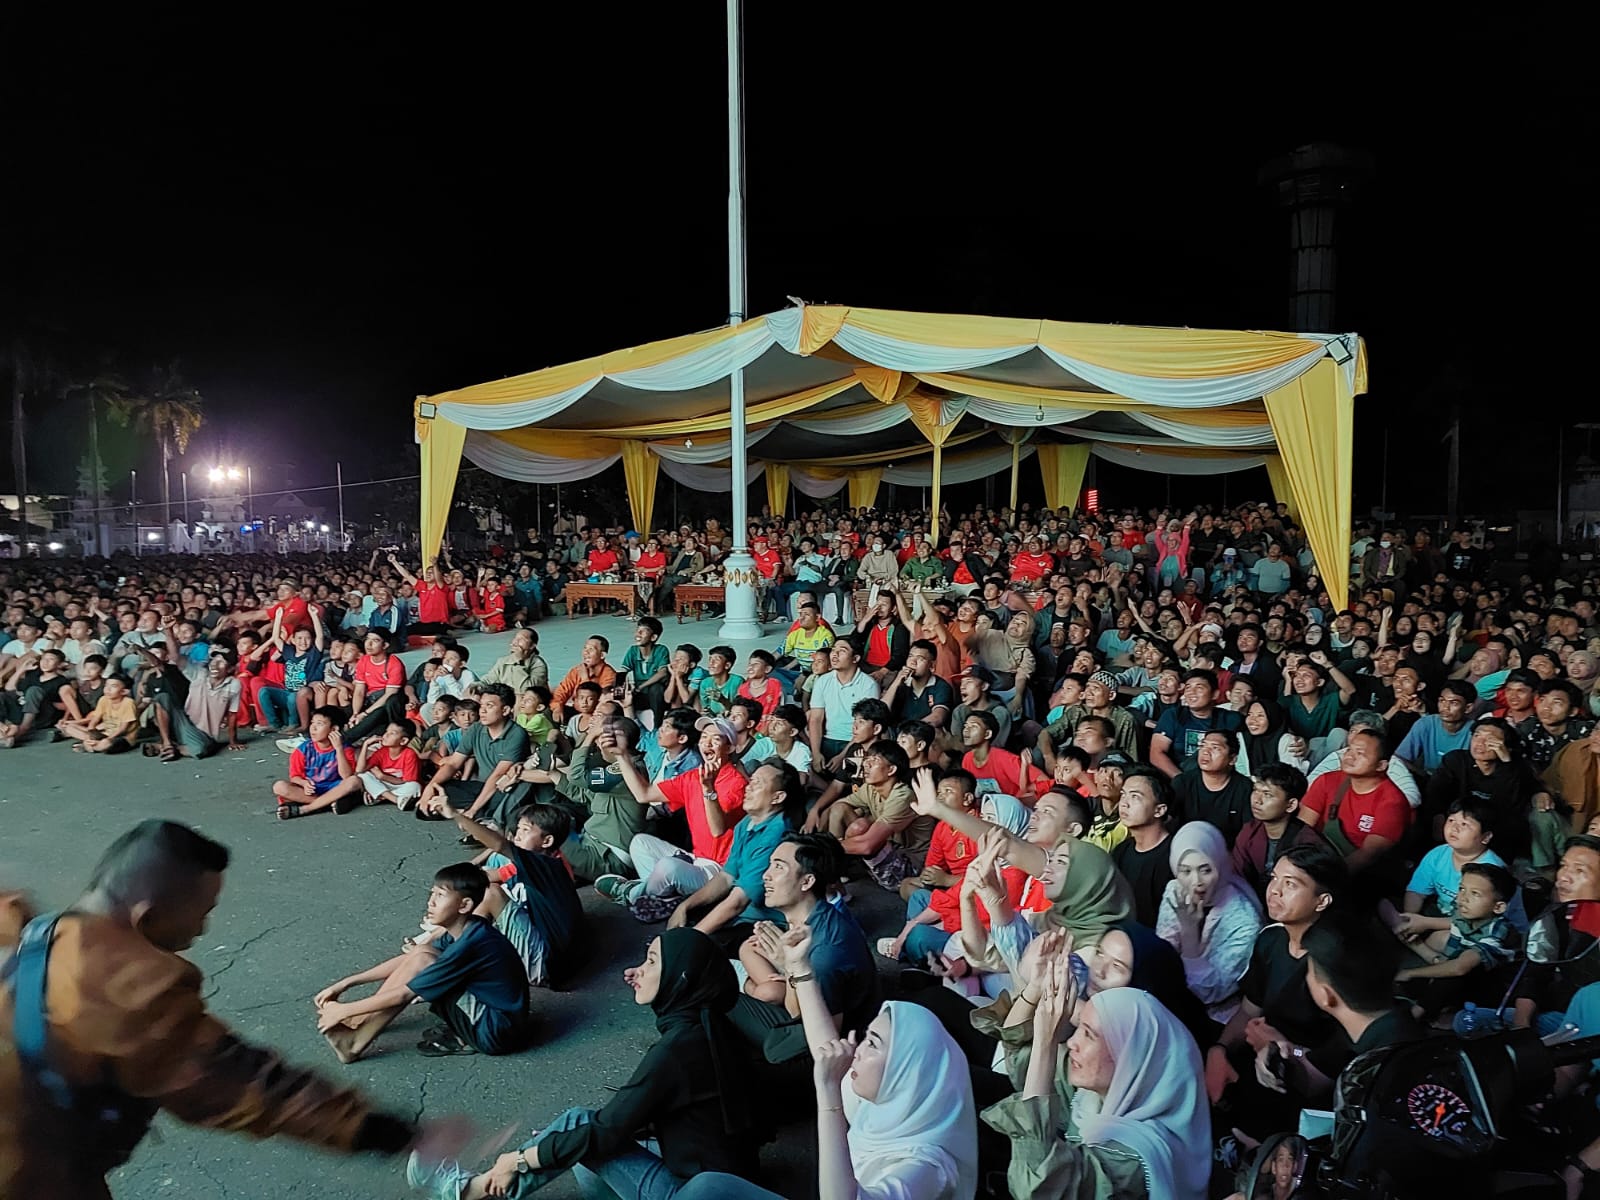 Ribuan Warga Meriahkan Nobar Indonesia vs Uzbekistan di Balai Raya Semarak Bengkulu